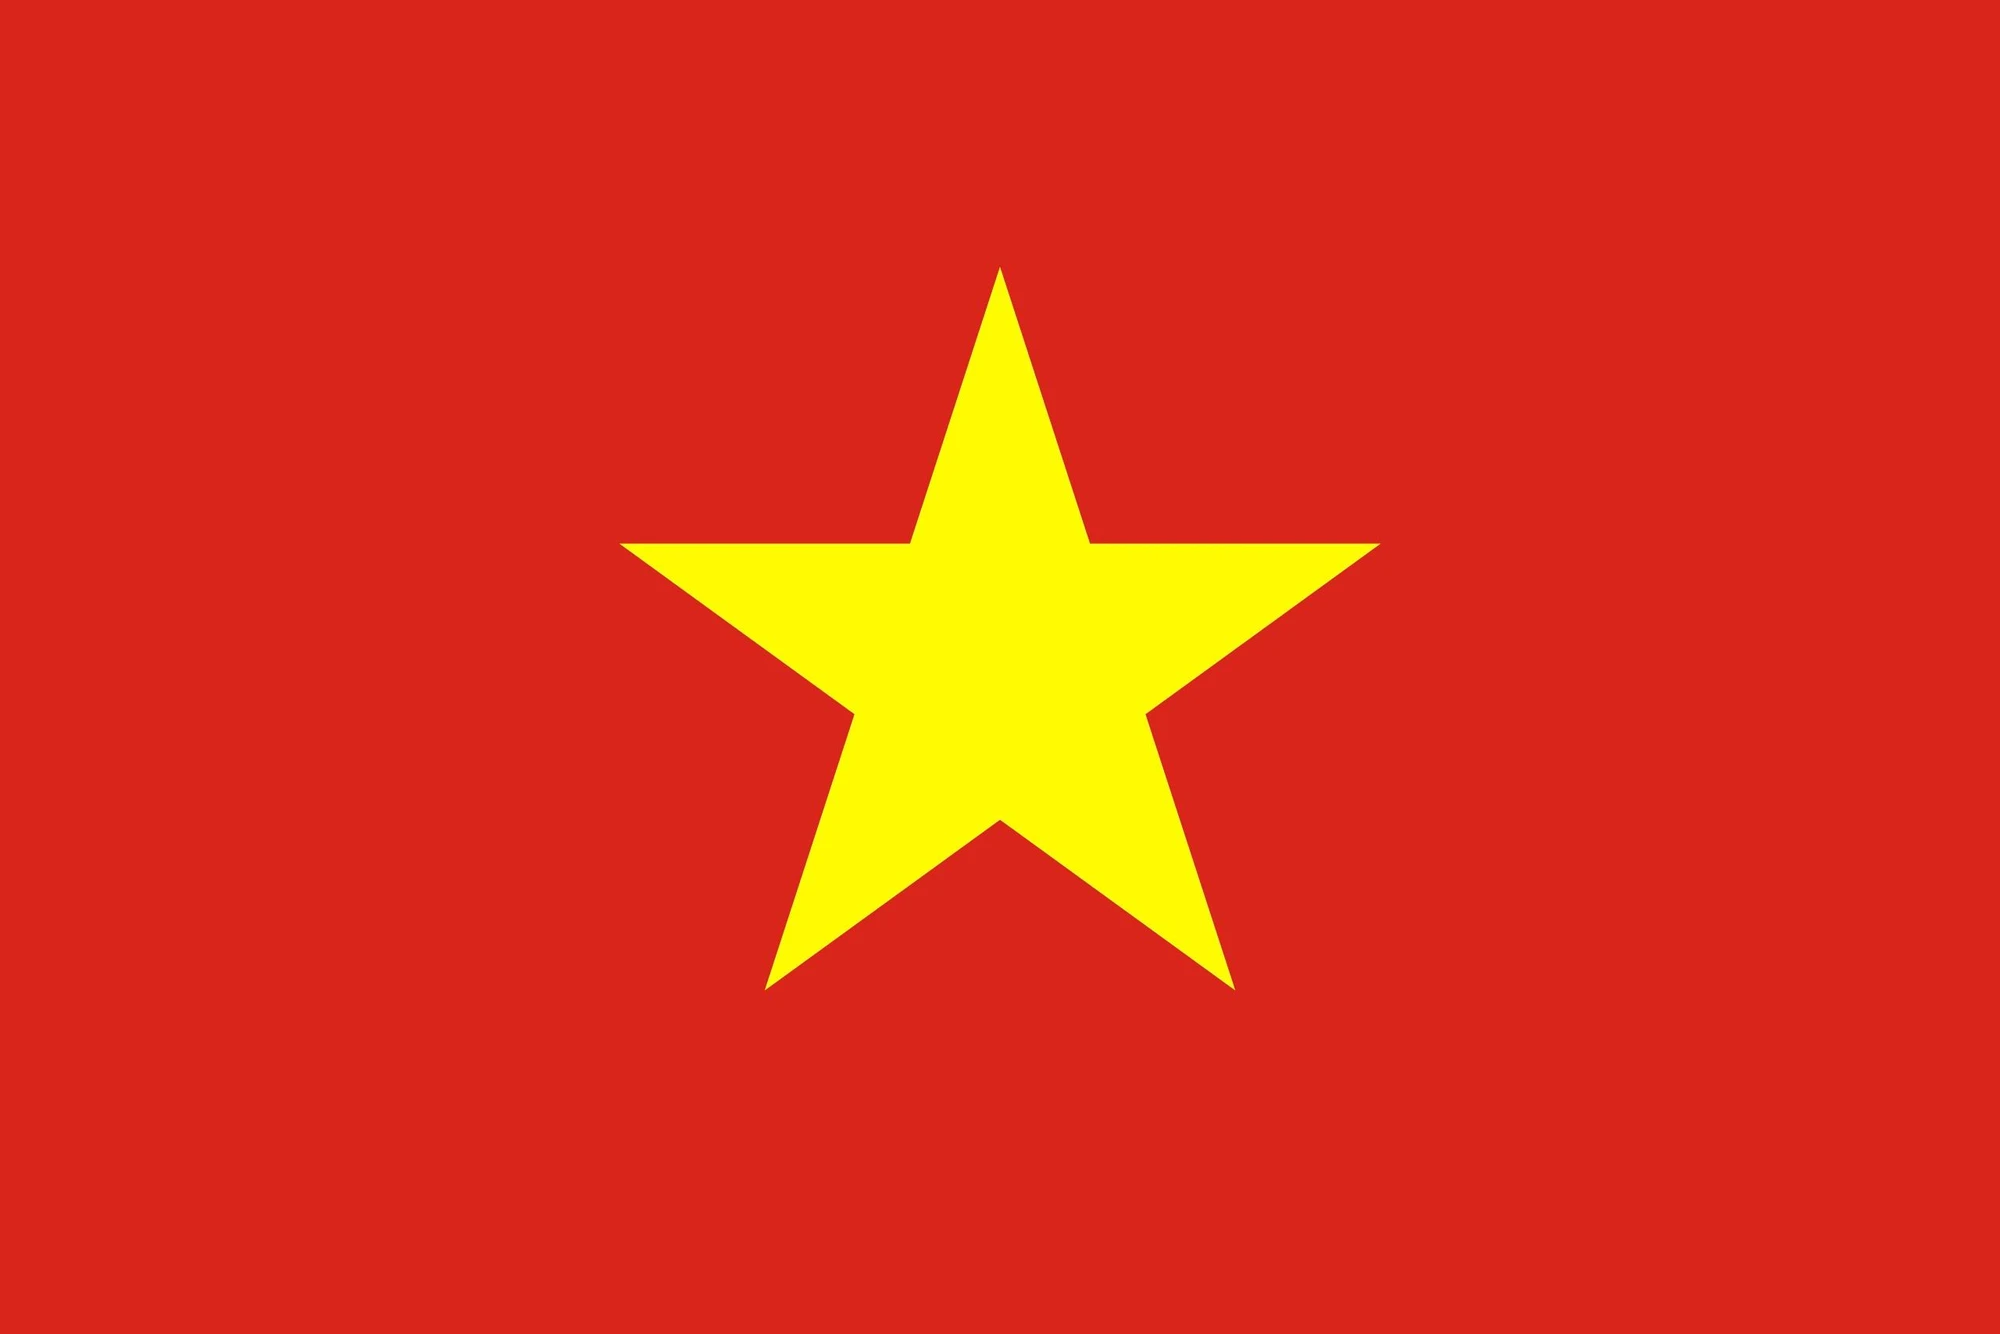 Cờ đỏ chót sao vàng – hình tượng linh nghiệm đặc trưng của dân tộc bản địa nước Việt Nam hình ảnh 1